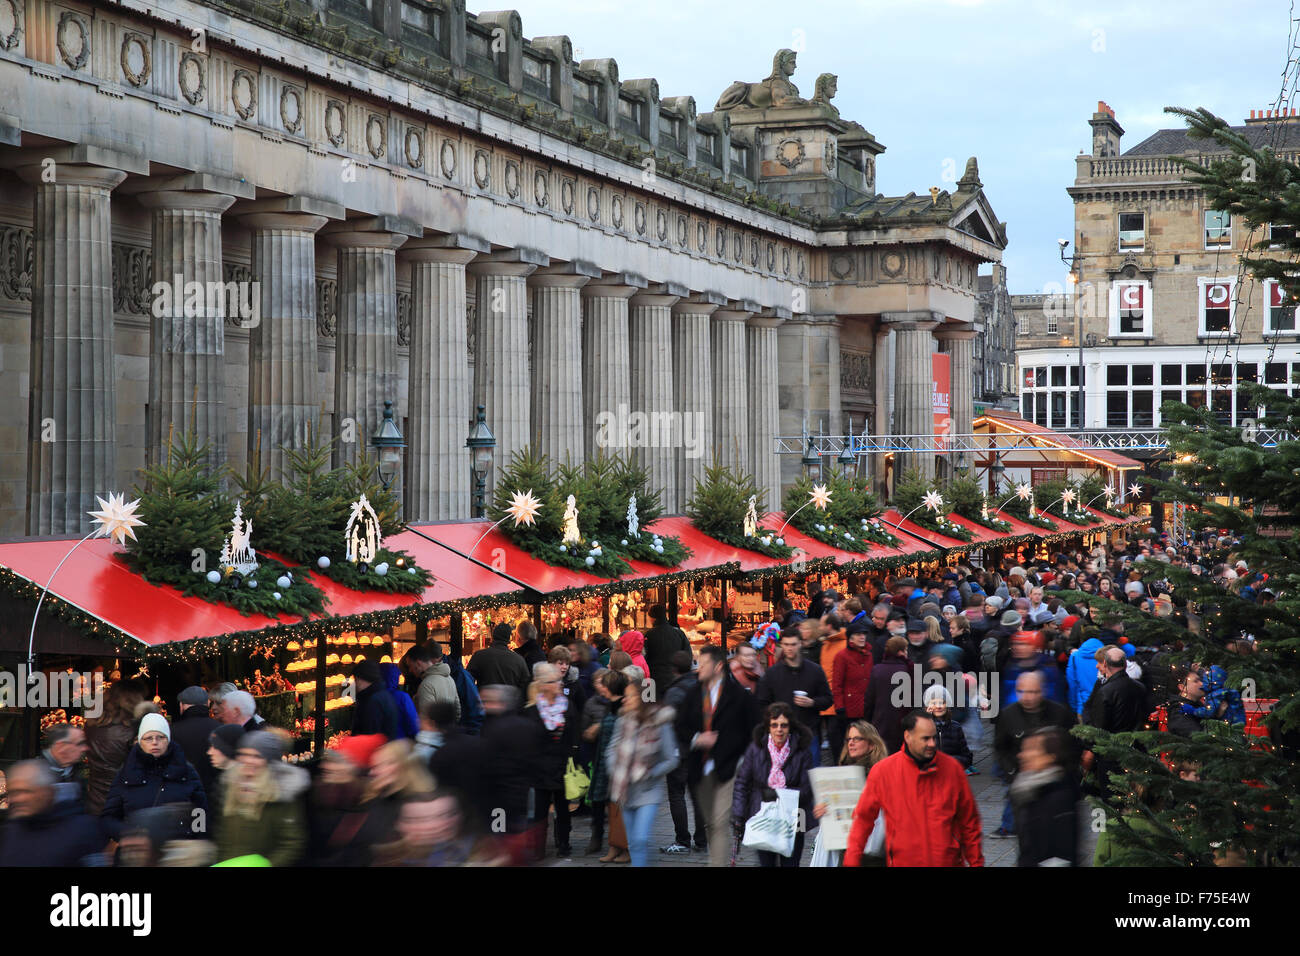 Le populaire marché de Noël allemand en face de la Royal Scottish Academy, à Édimbourg, Écosse, Royaume-Uni Banque D'Images